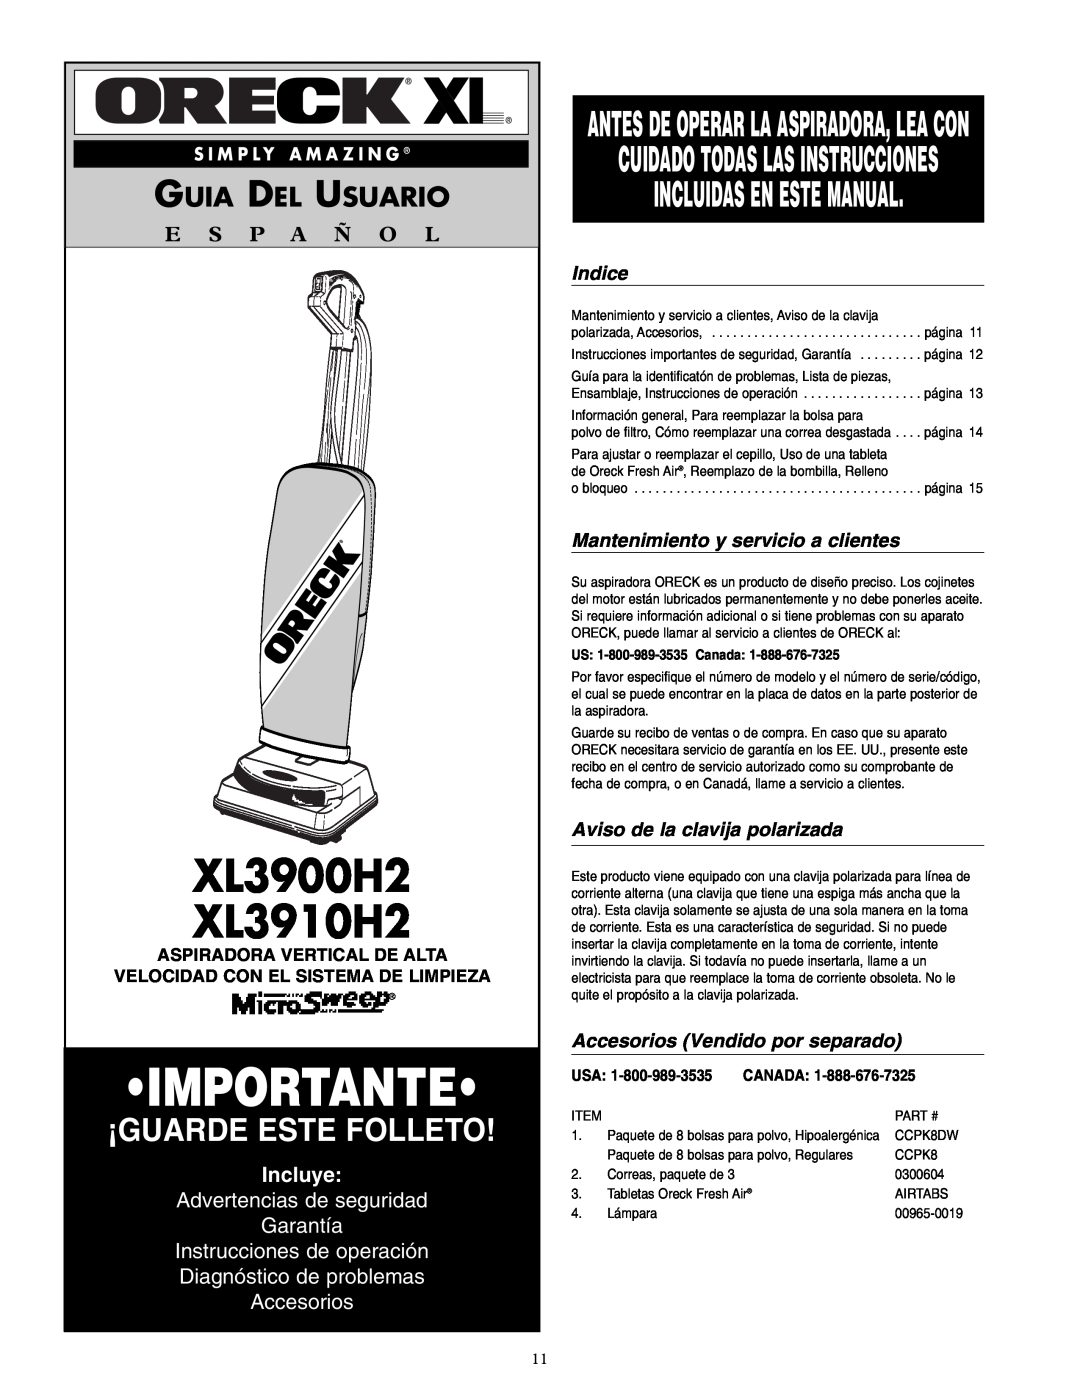 Oreck XL3910H2 Incluidas En Este Manual, Guia Del Usuario, E S P A Ñ O L, Incluye, Advertencias de seguridad Garantía 